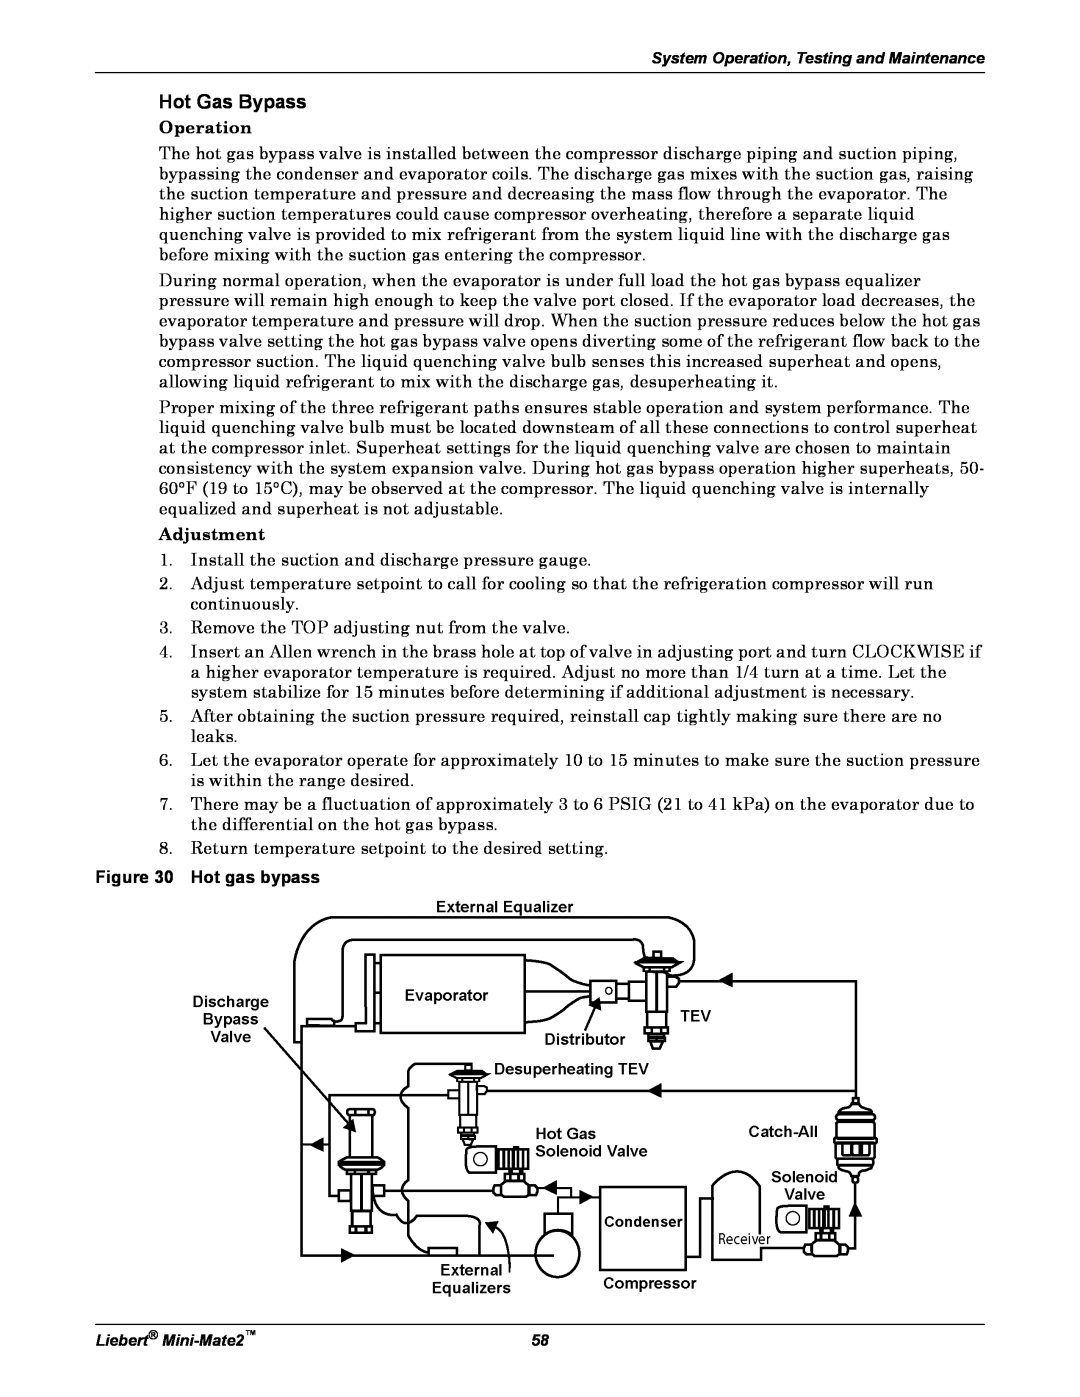 Emerson MINI-MATE2 user manual Hot Gas Bypass, Hot gas bypass 